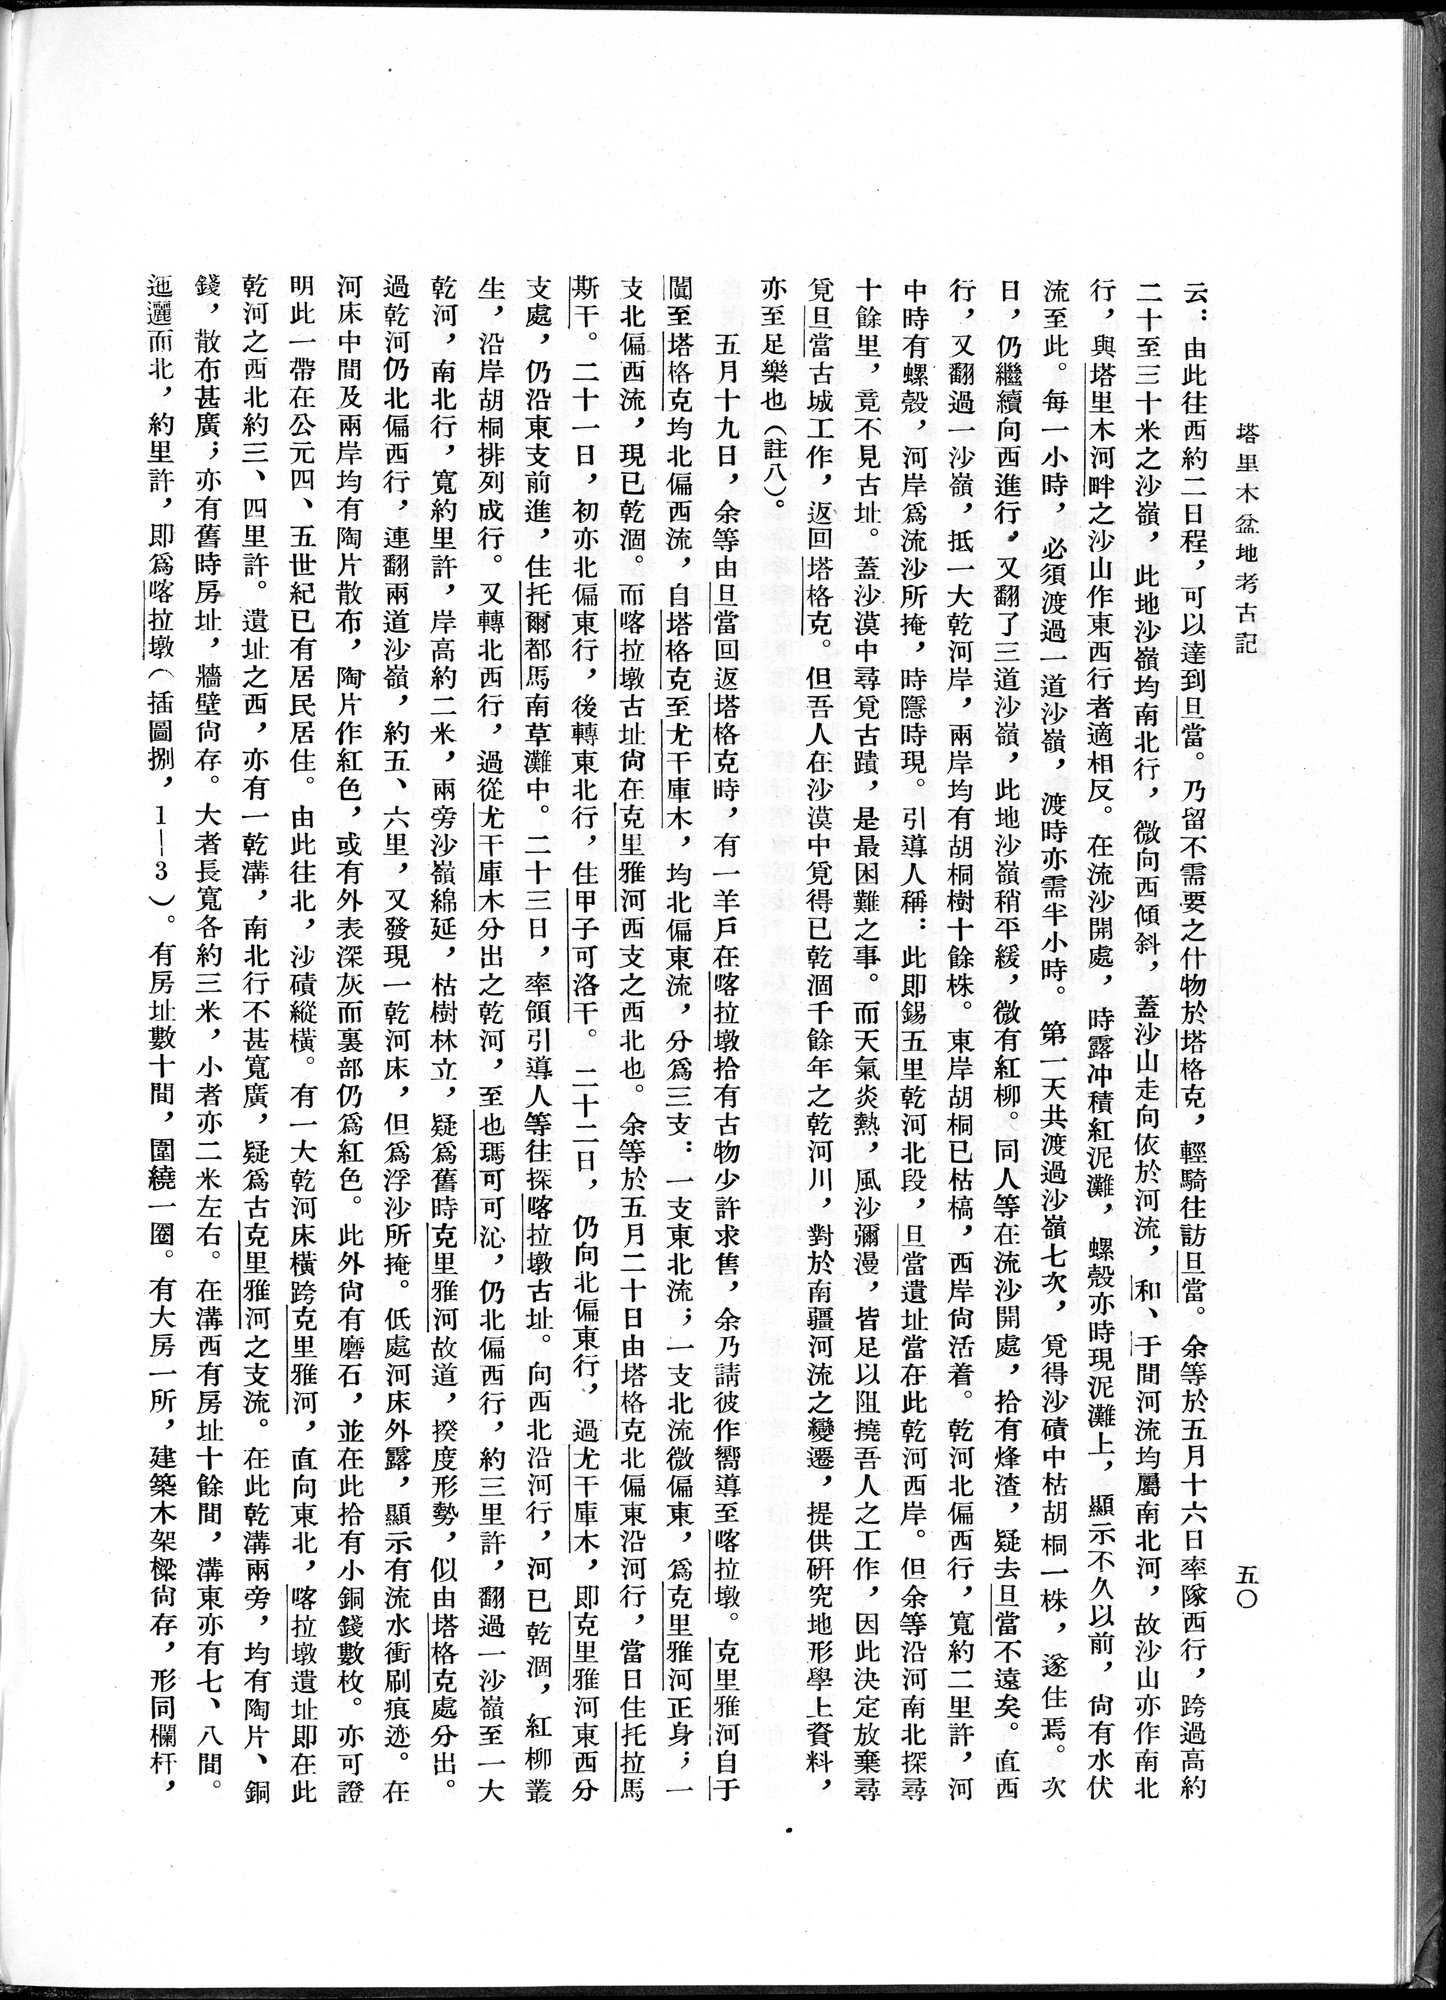 塔里木盆地考古記 : vol.1 / 74 ページ（白黒高解像度画像）